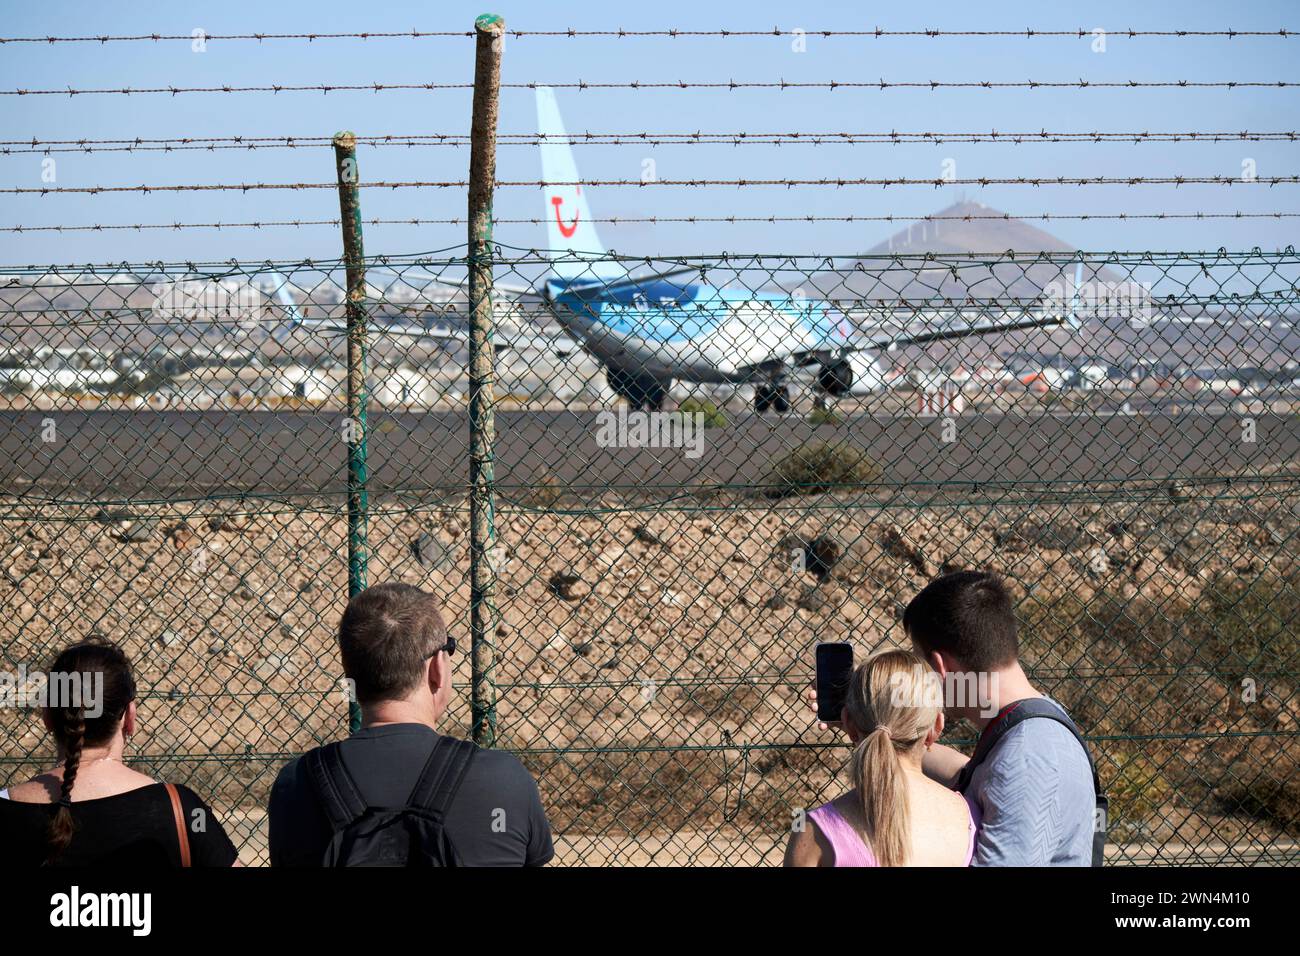 Touristen, die Flugzeuge vom Flughafen abheben, Fußweg am Ende der Landebahn Lanzarote, Kanarische Inseln, spanien Stockfoto